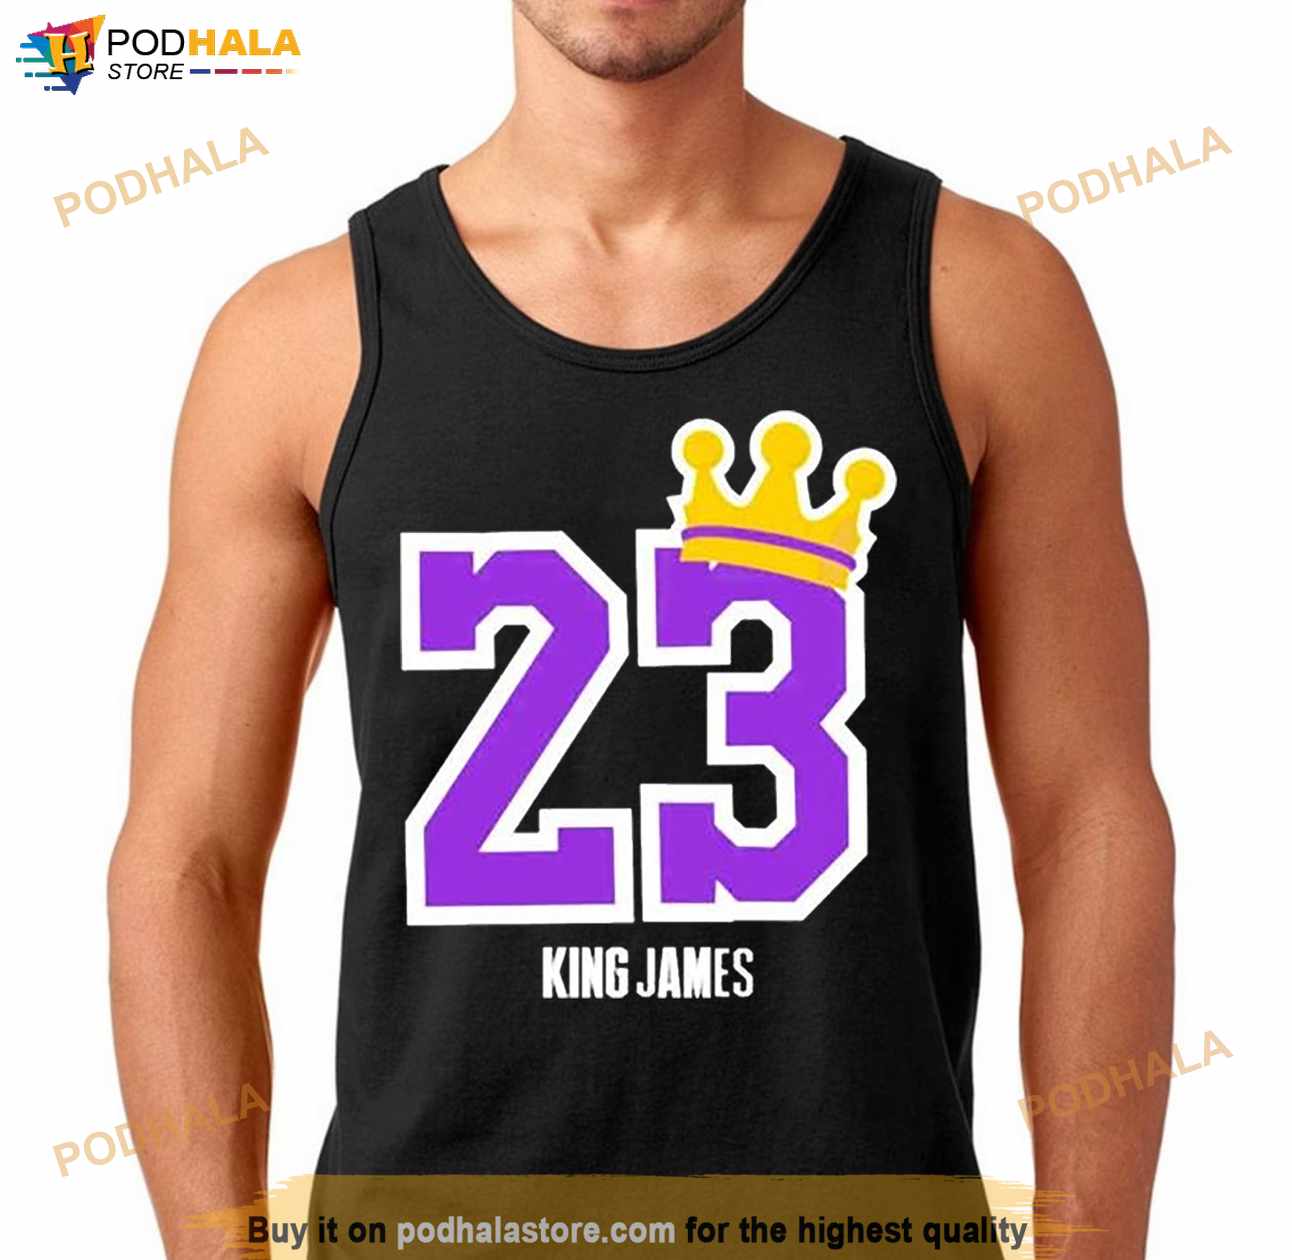 king james jersey